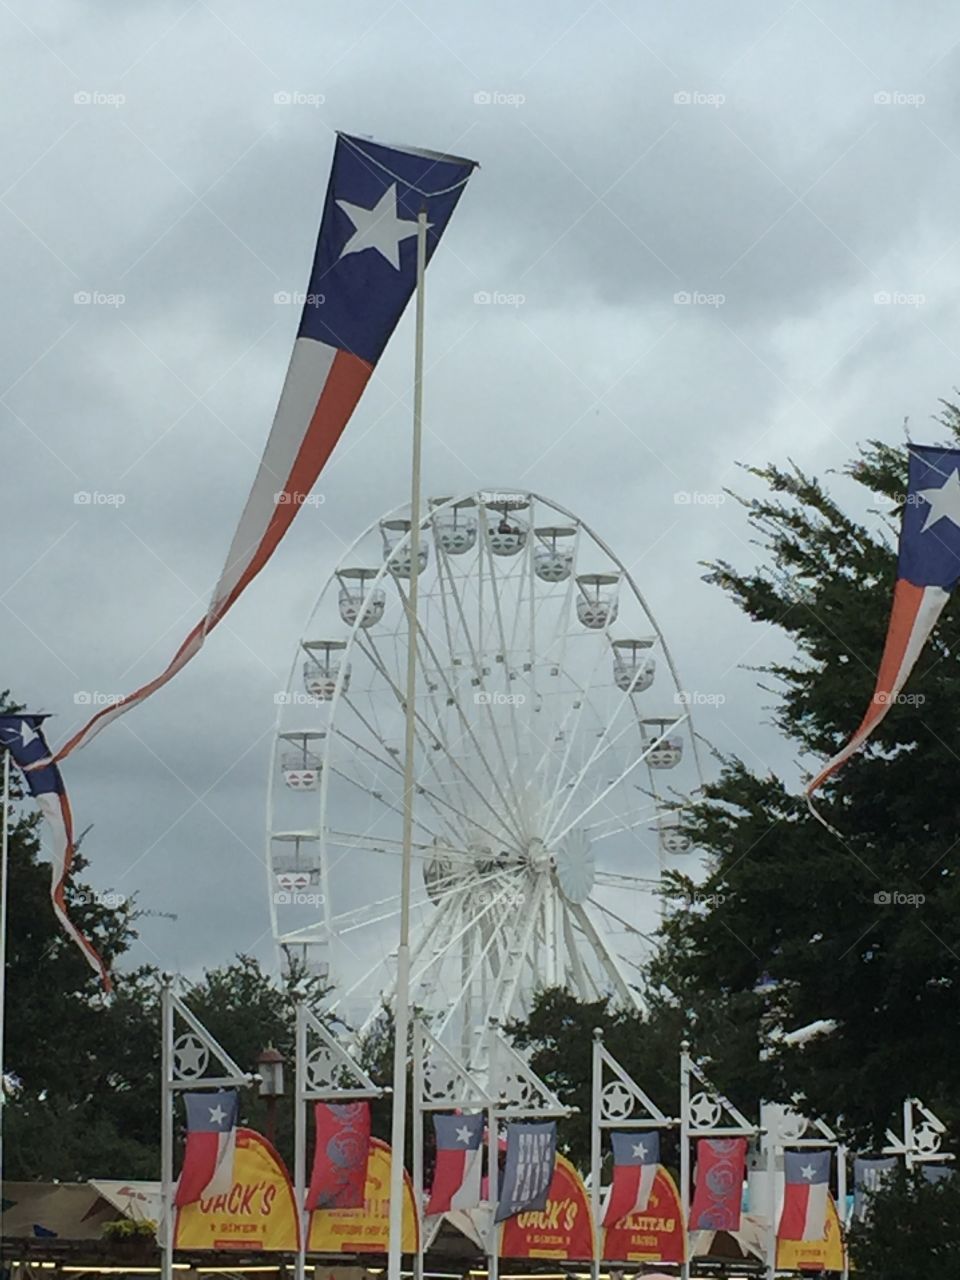 Texas Star Ferris wheel at the Texas state fair